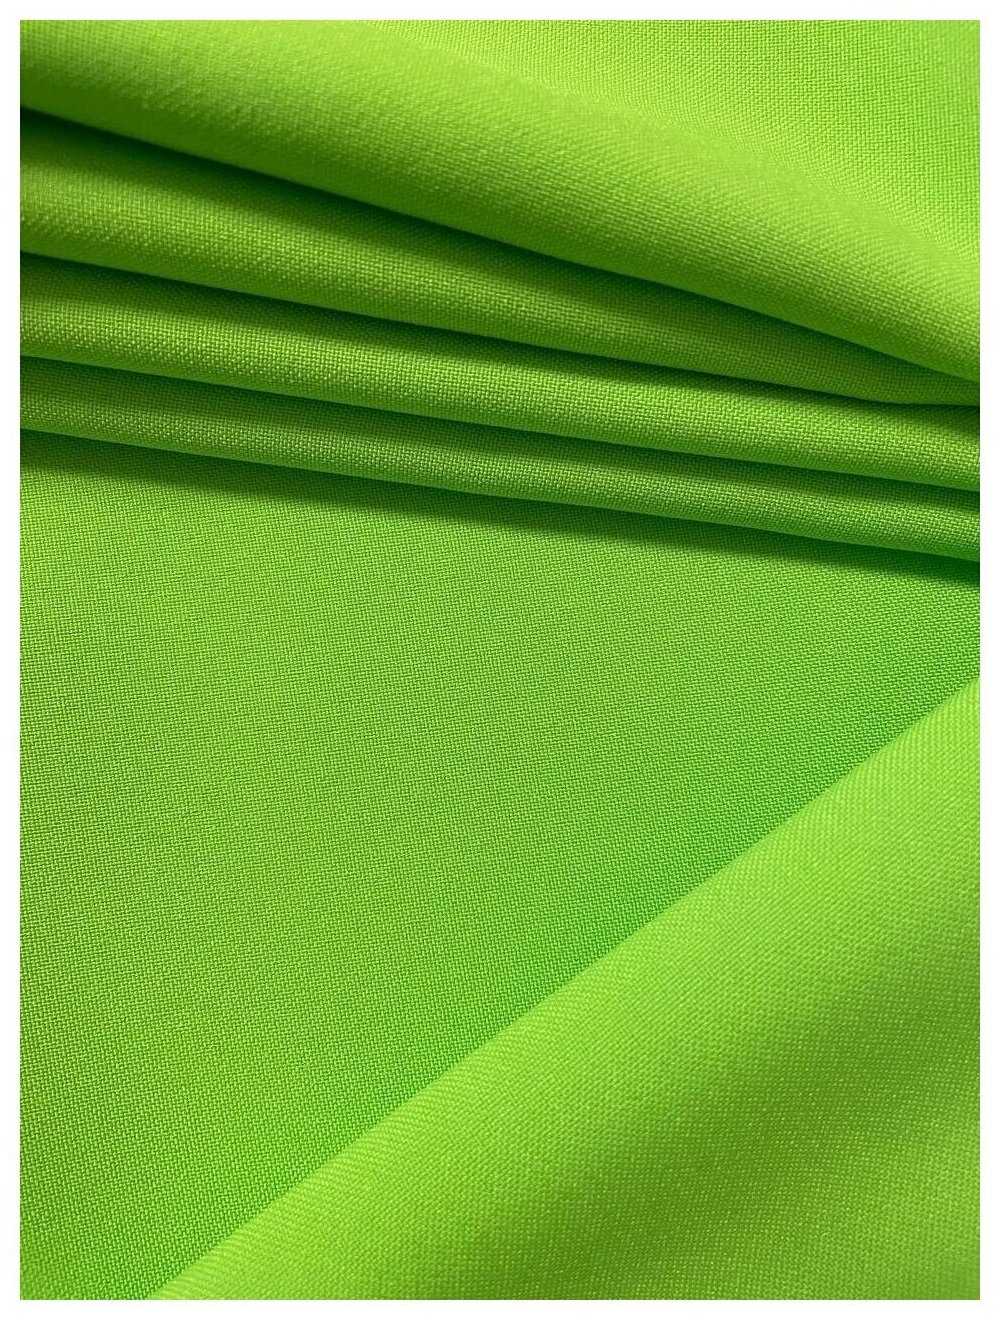 Хромакей зелёный фон 3*6м тканевый, плотный. Фон для фото Extra Green Screen HQ полиэстер